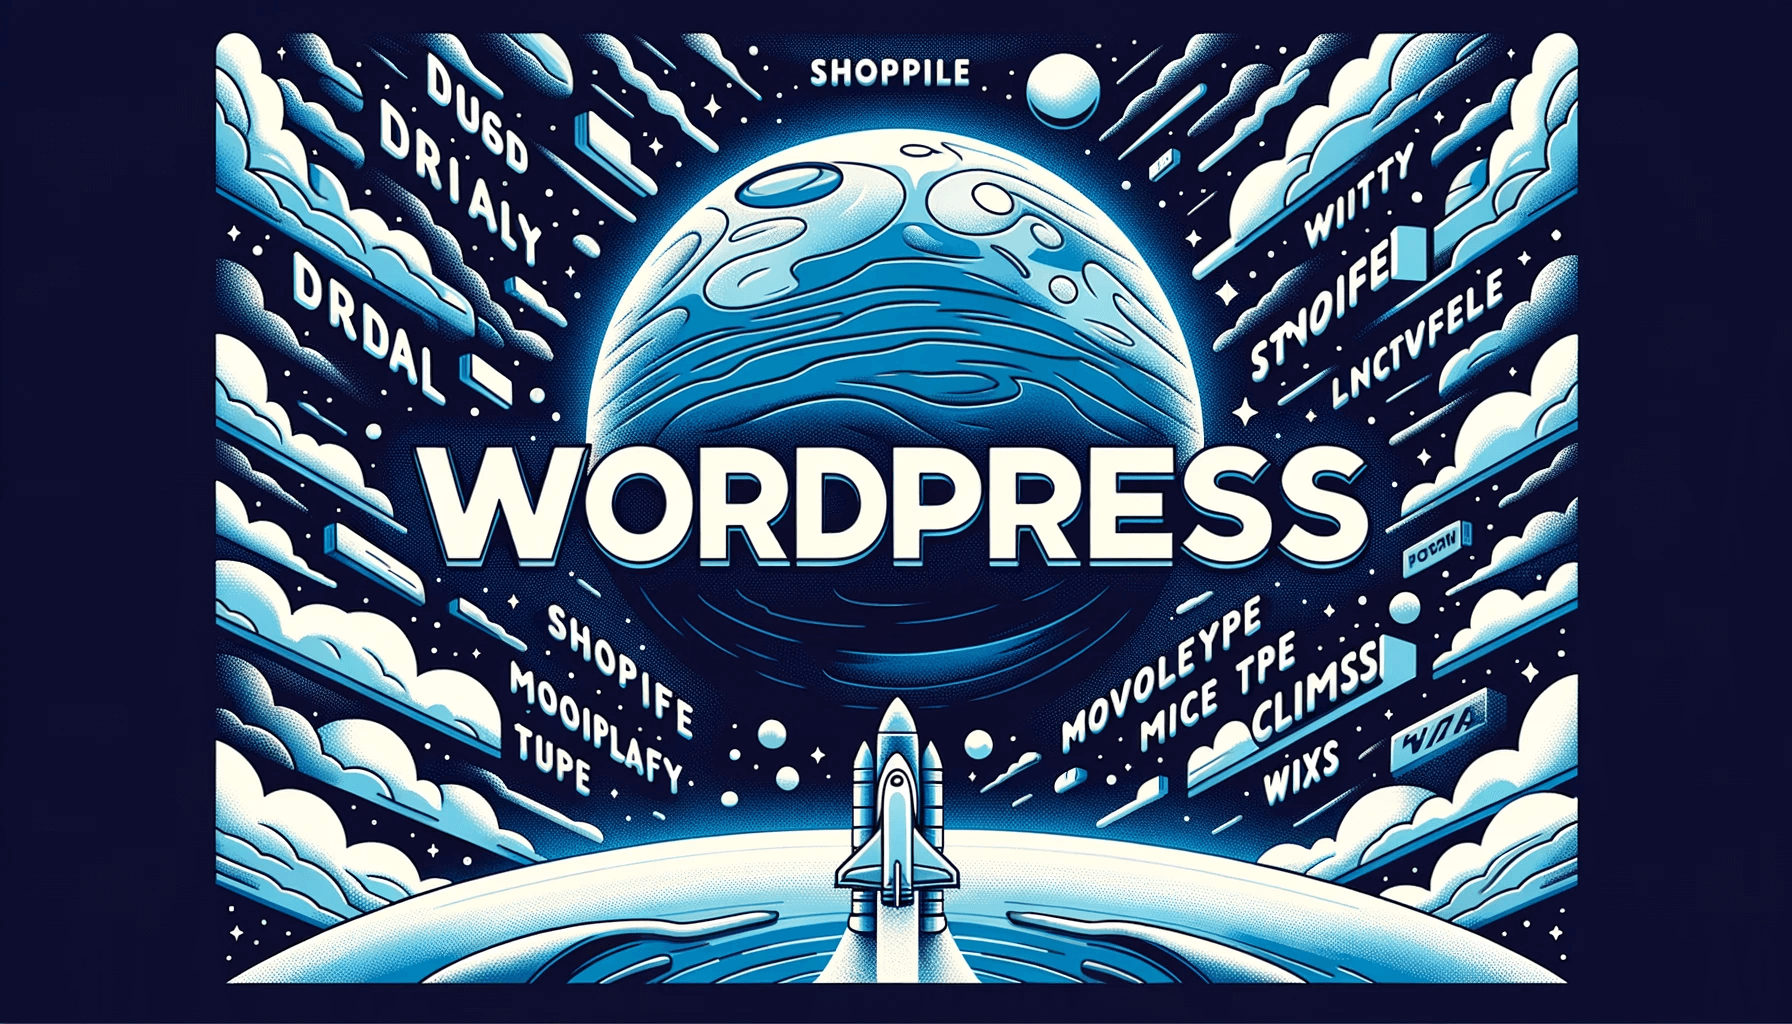 このイラストは、WordPressがウェブの宇宙での中心的な存在であり、周りの技術やサービスとともに成長し続けていることを象徴している